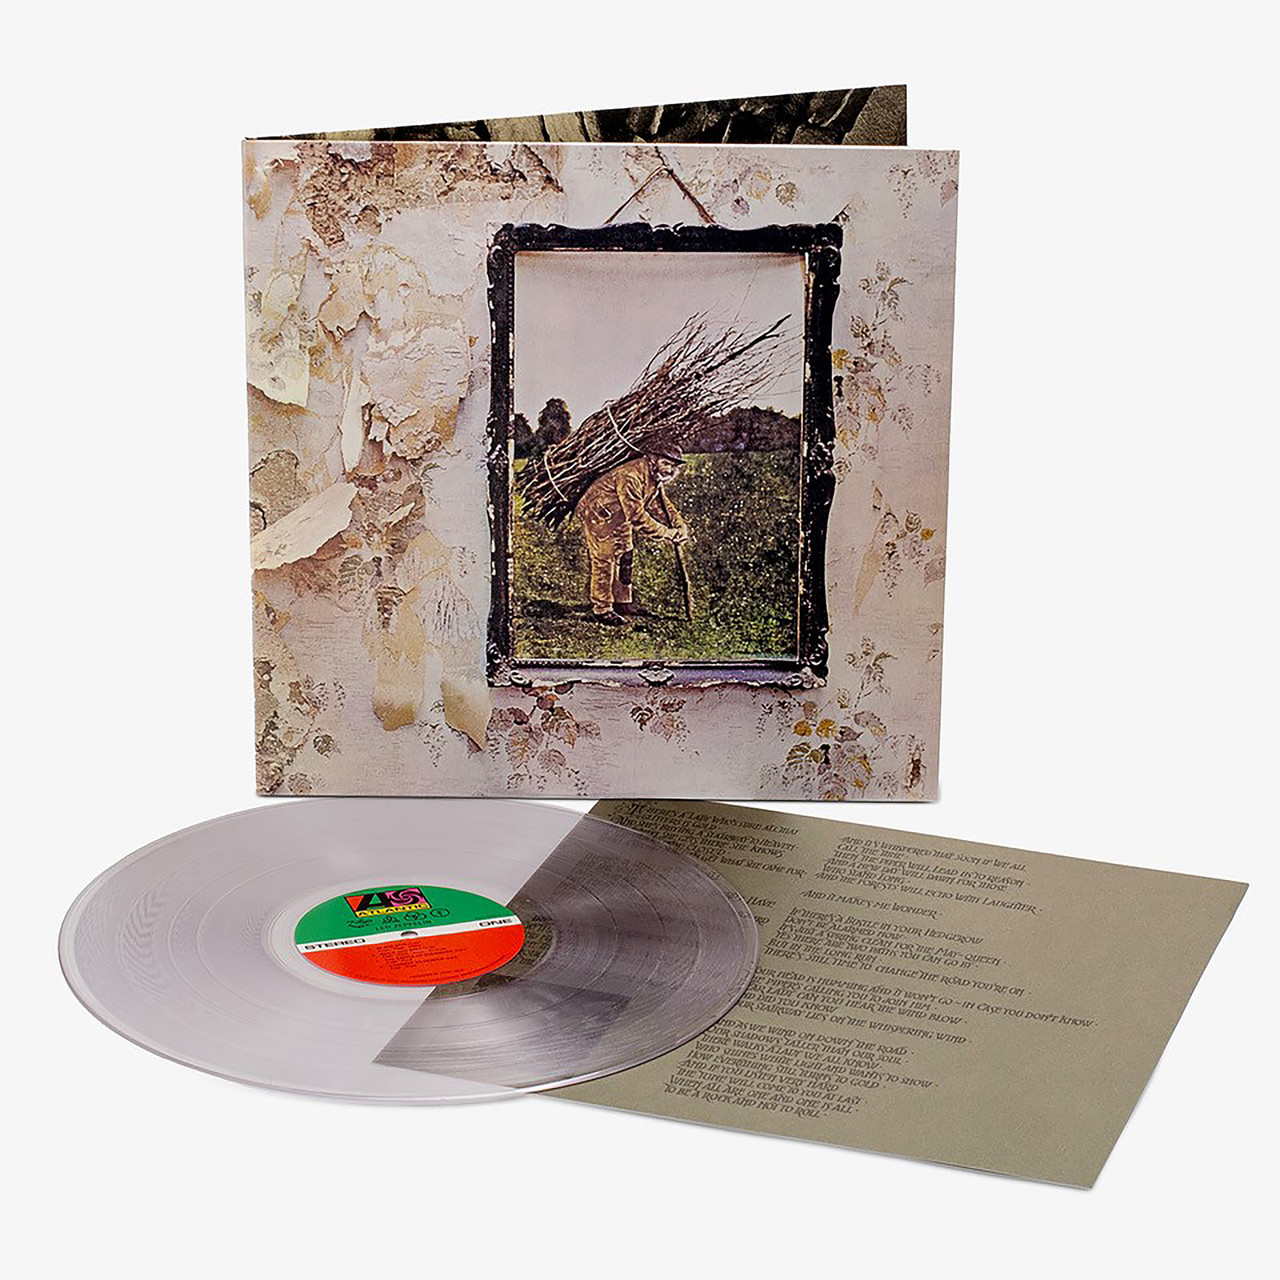 Led Zeppelin - Led Zeppelin III (Remaster) [Official Full Album] 